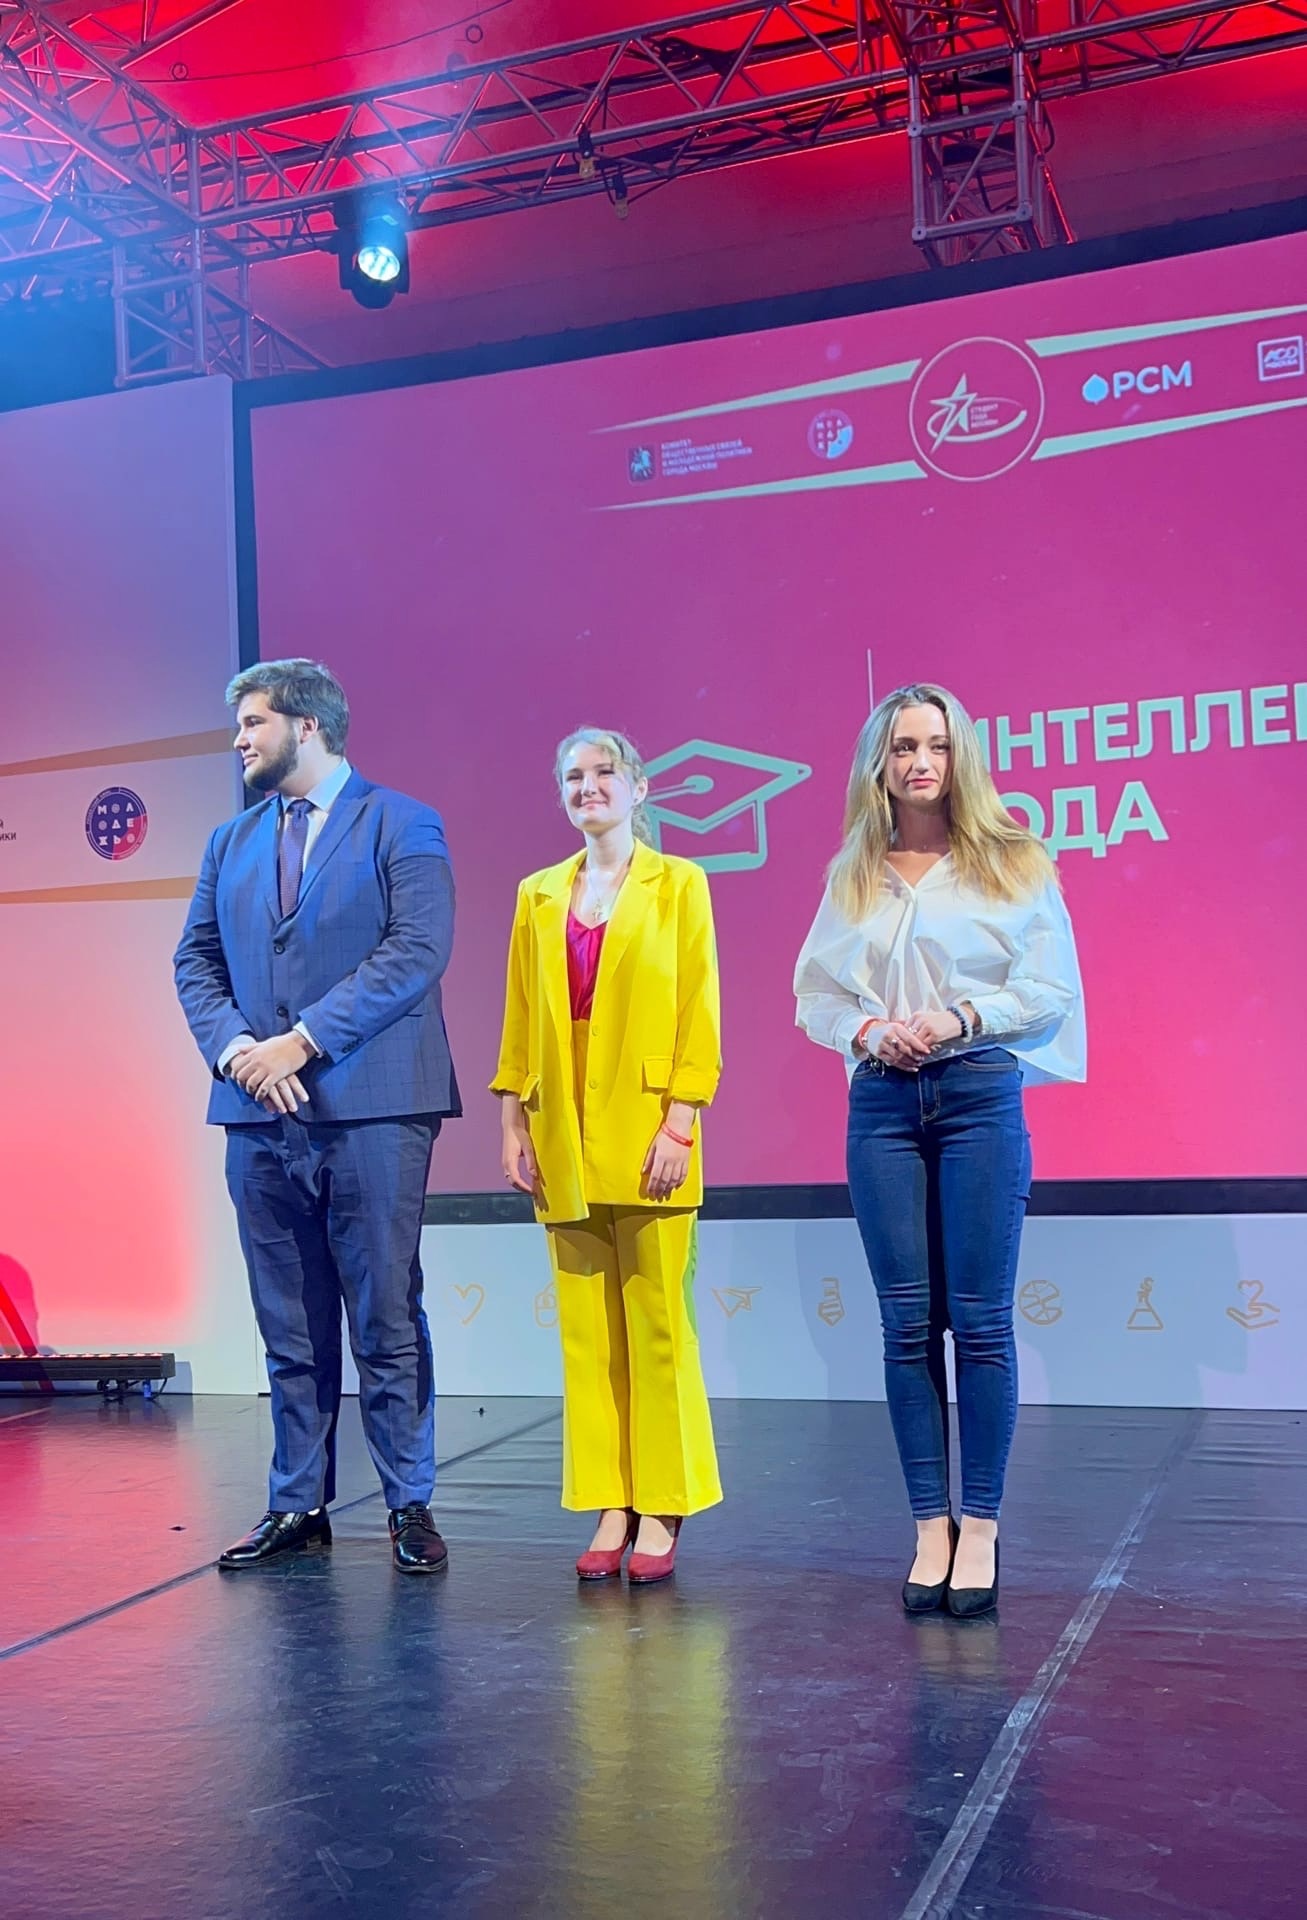 Студентка ИМПП стала лауреатом конкурса «Студент года Москвы-2022» в номинации «Интеллект года»  